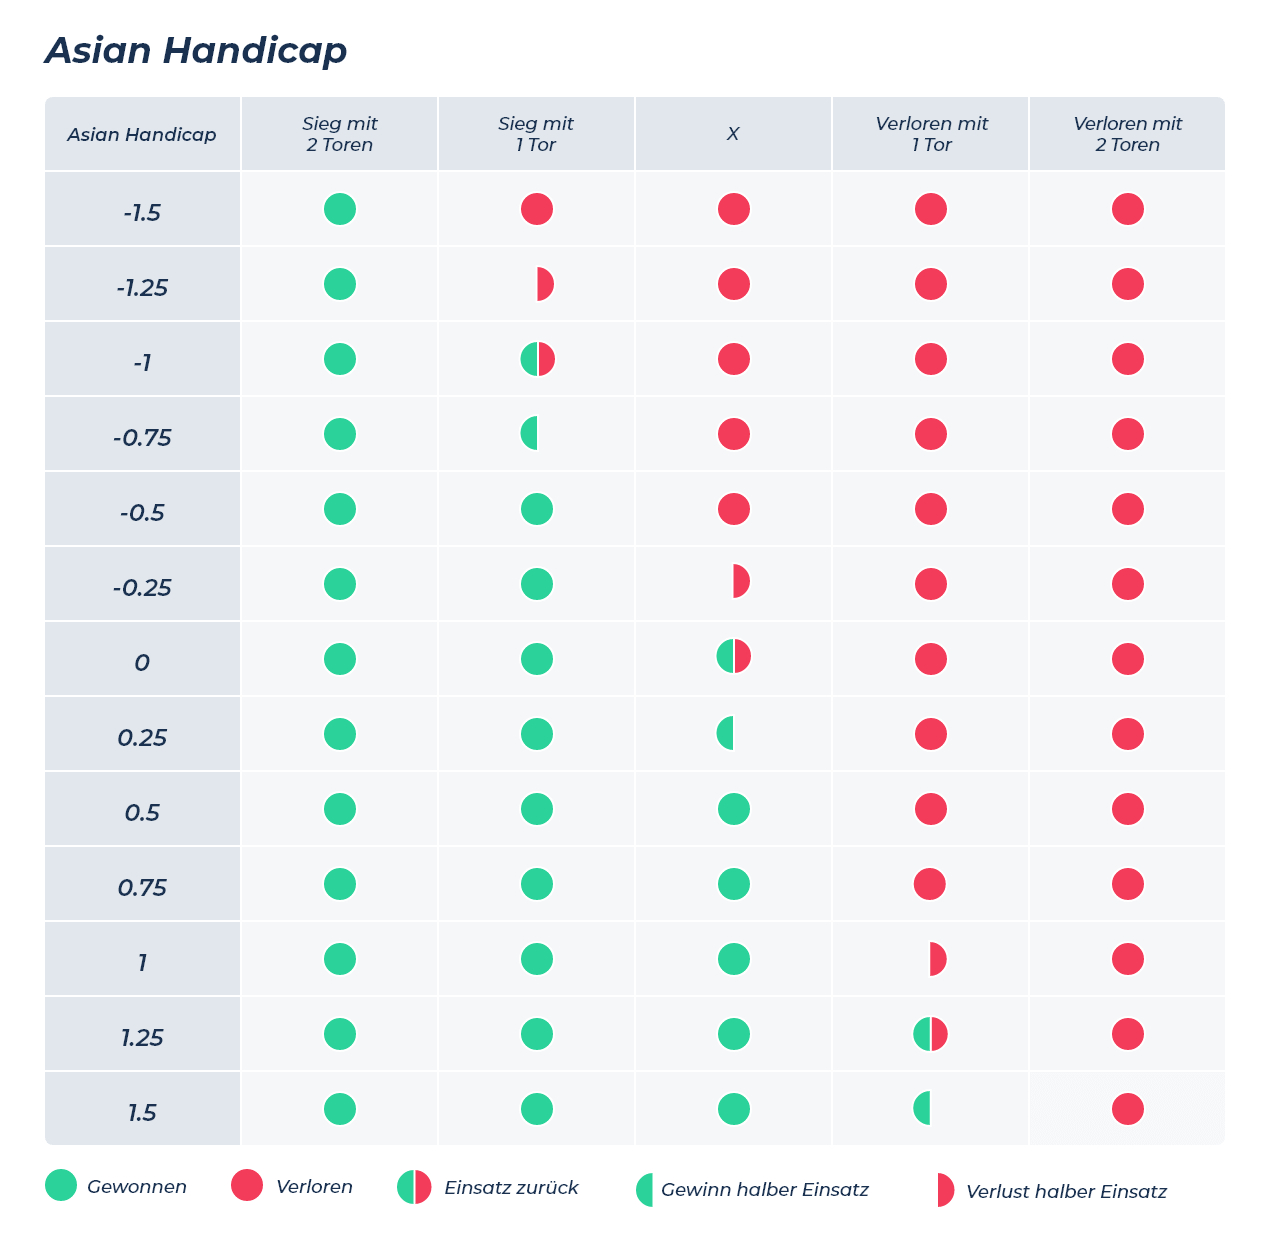 ausführliche asian handicap tabelle mit allen möglichen ausgängen